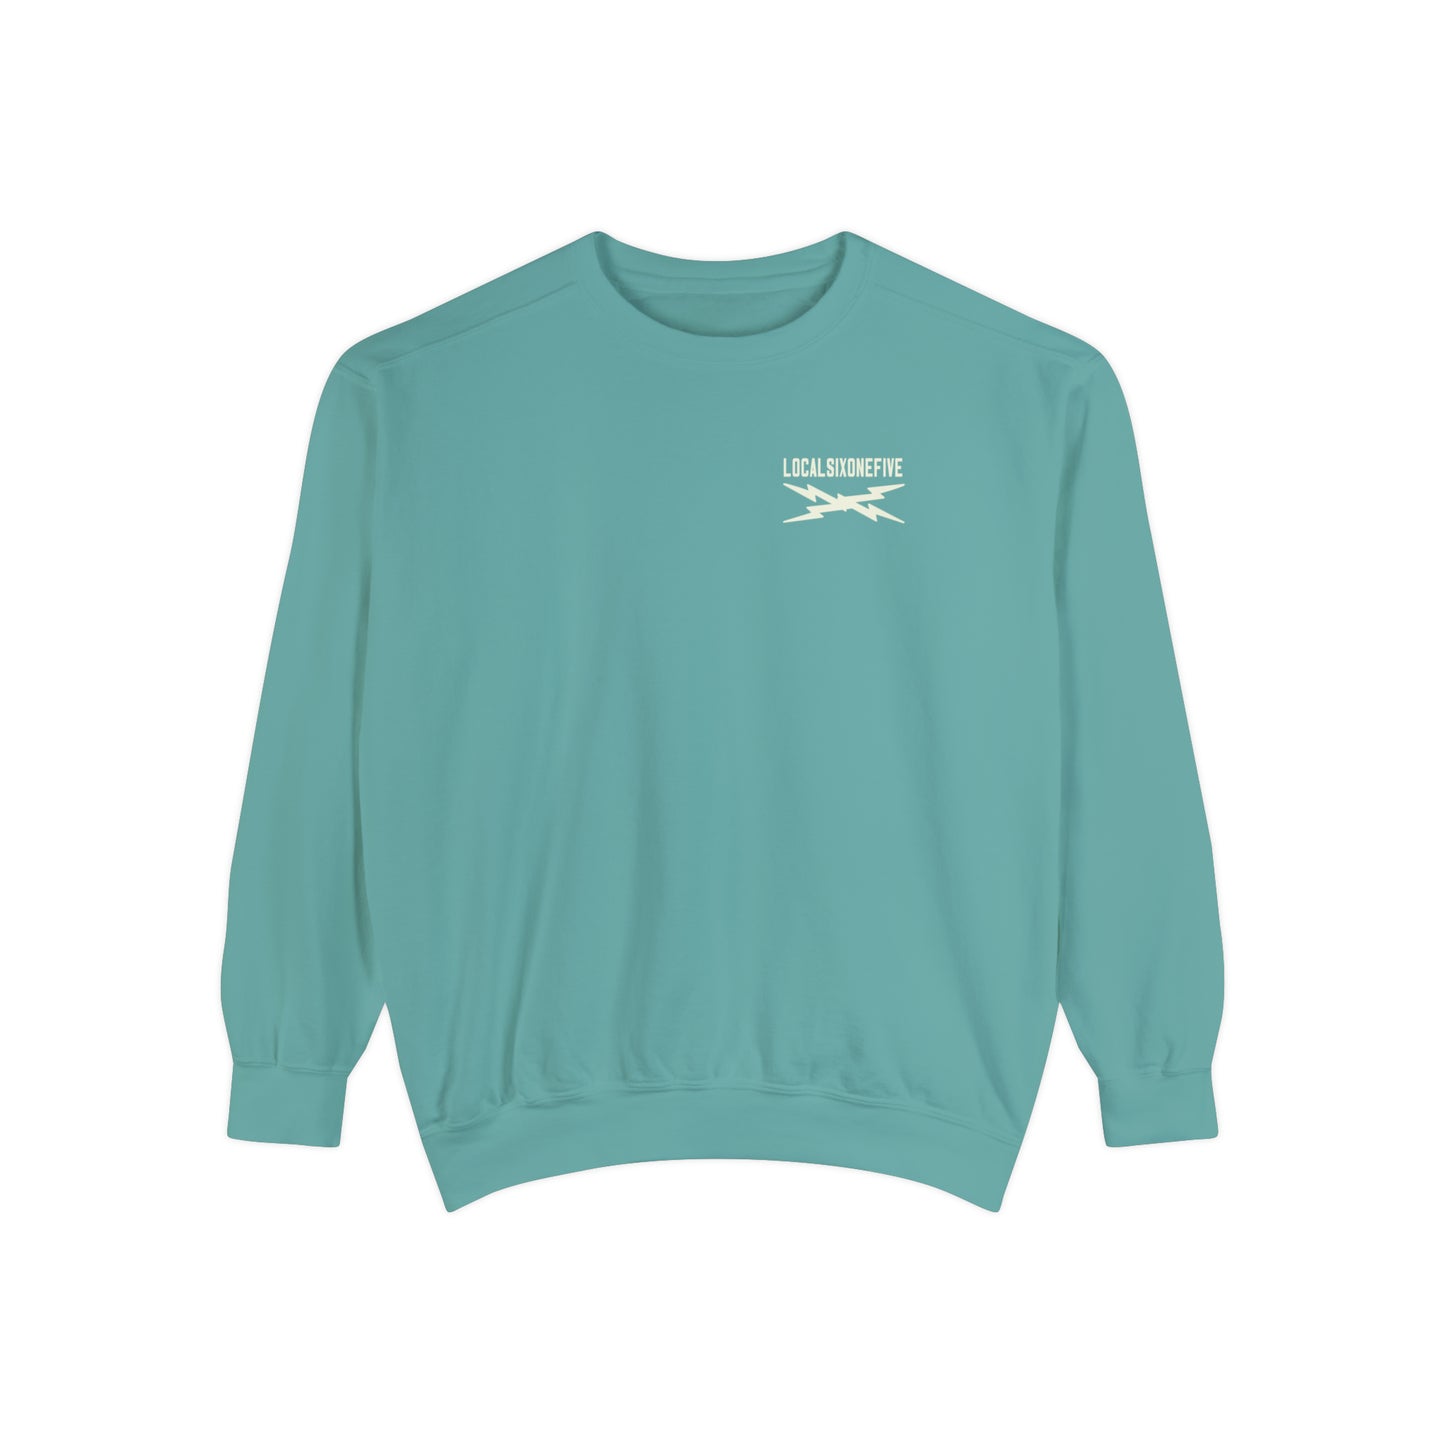 NashTEETH XLongBolts Garment-Dyed Sweatshirt